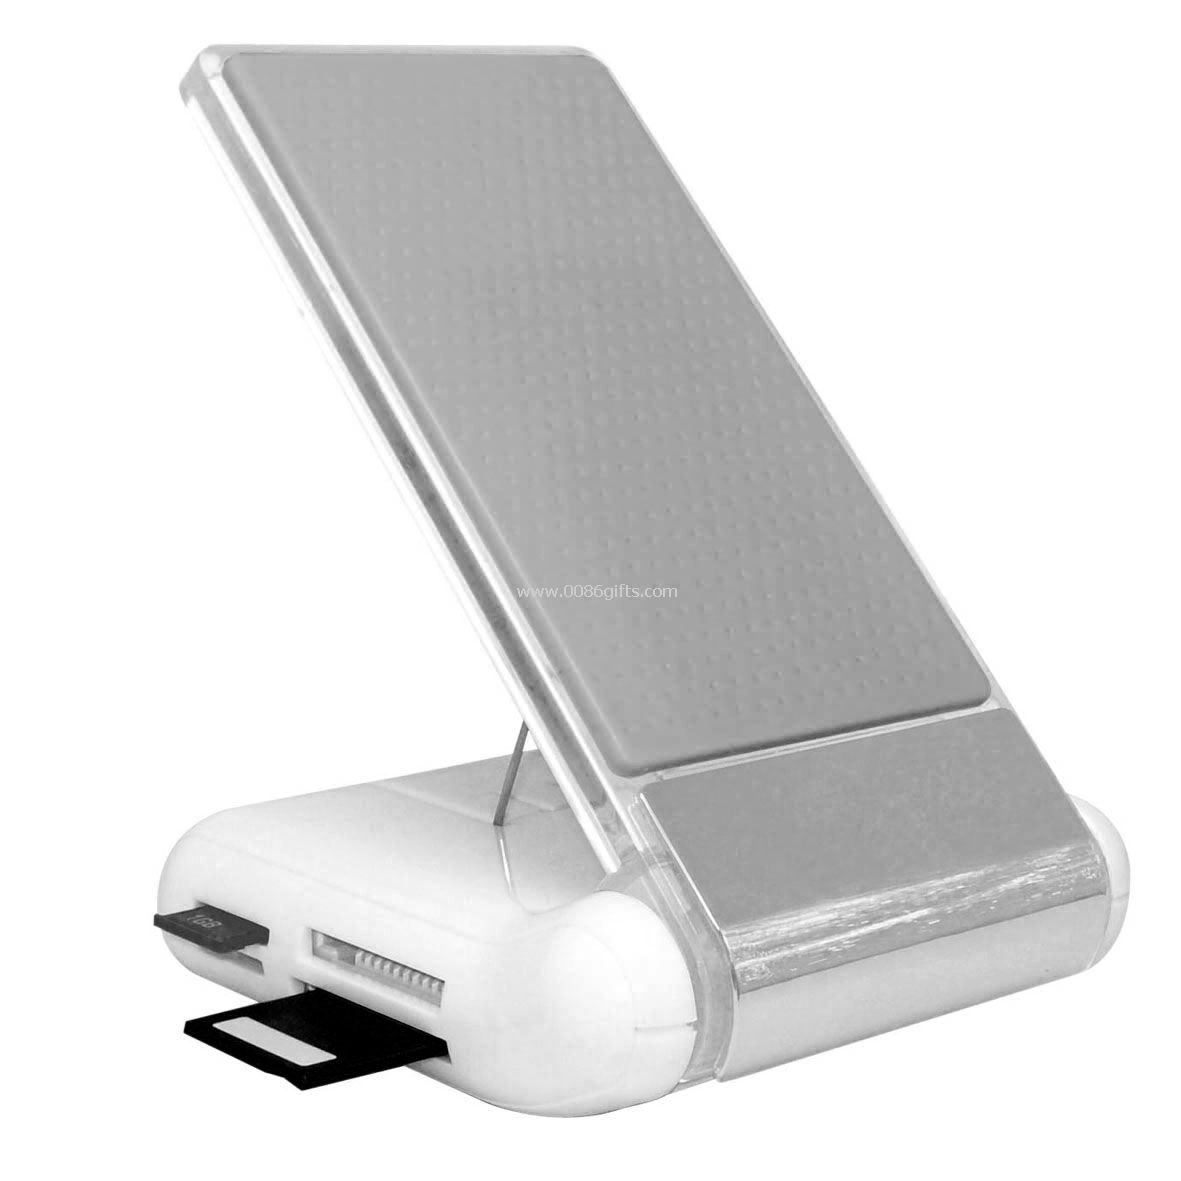 USB لوحة الوصل حامل بطاقة القارئ المحمول